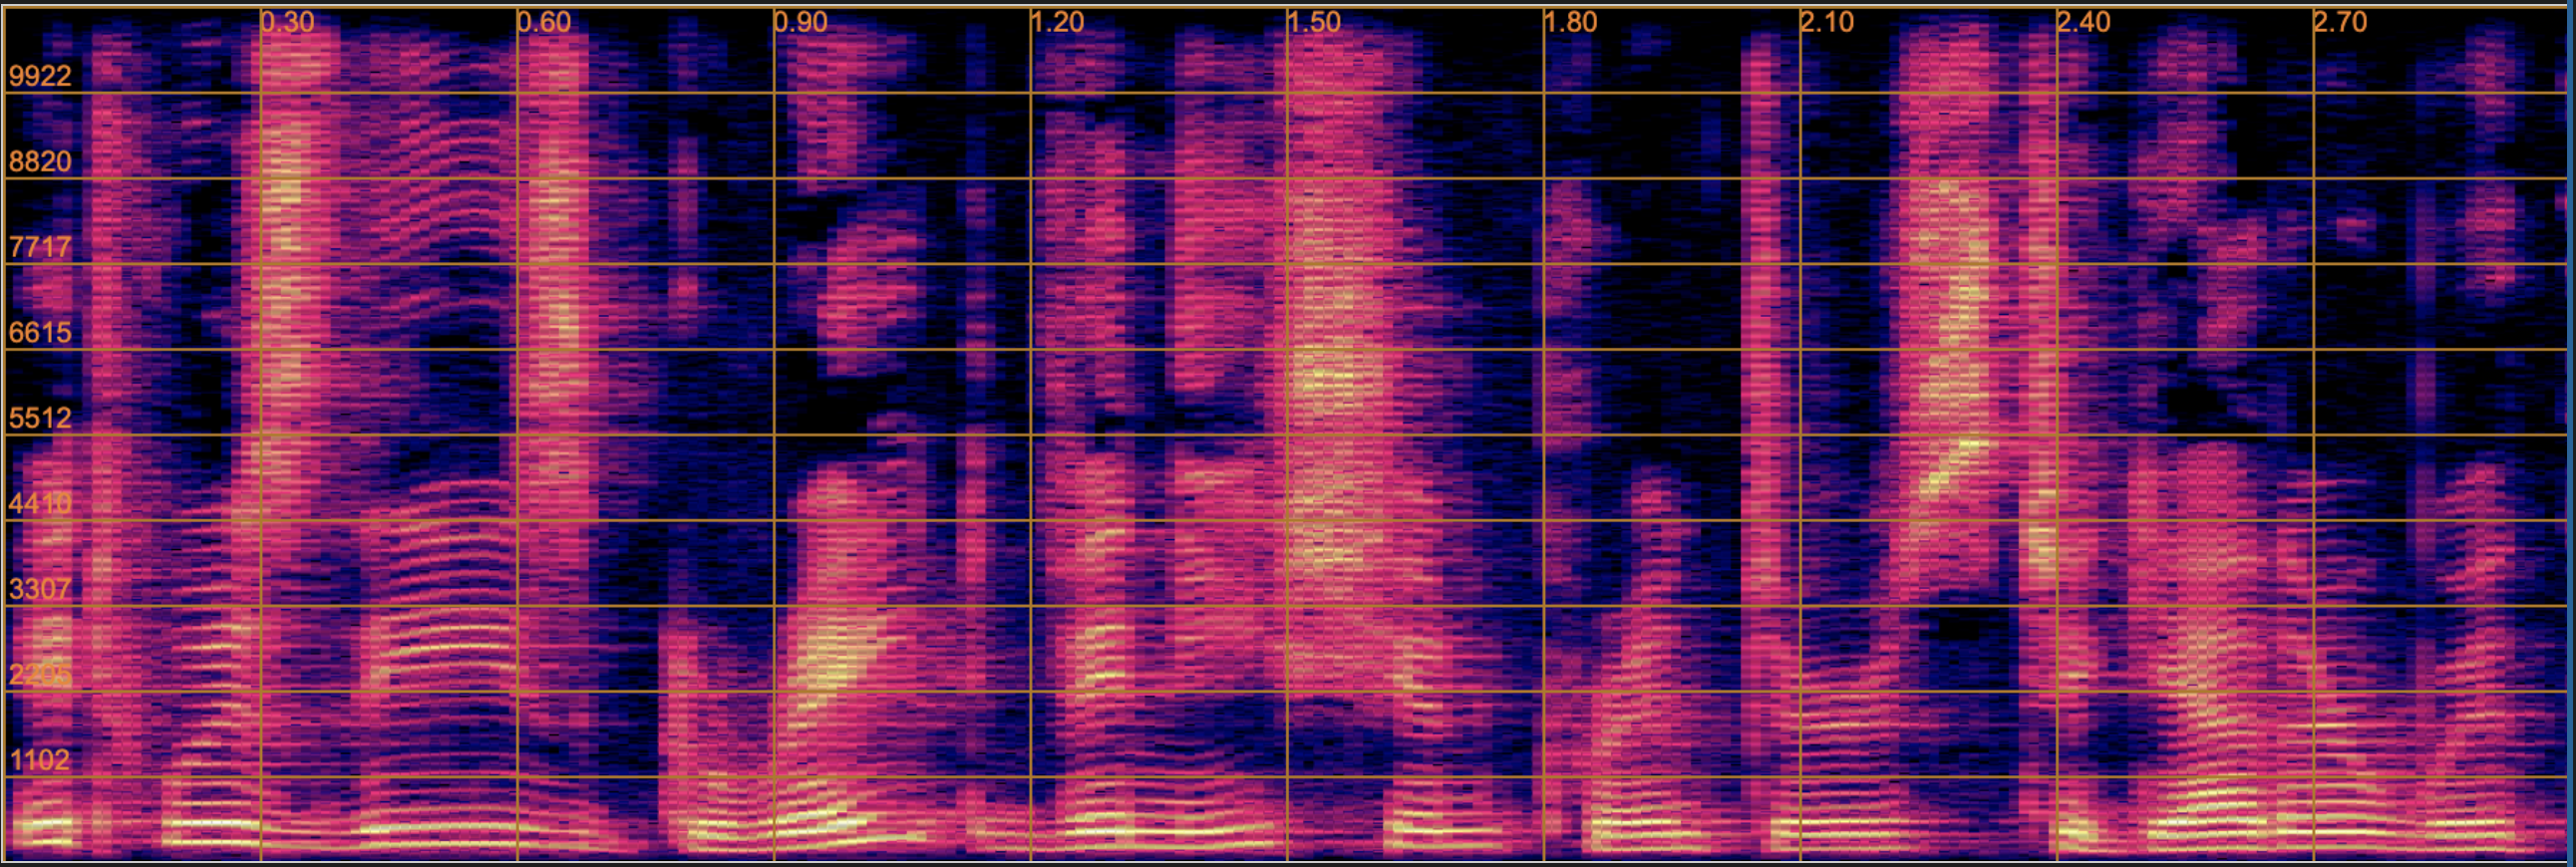 spectrogram of ground truth 22.05 kHz